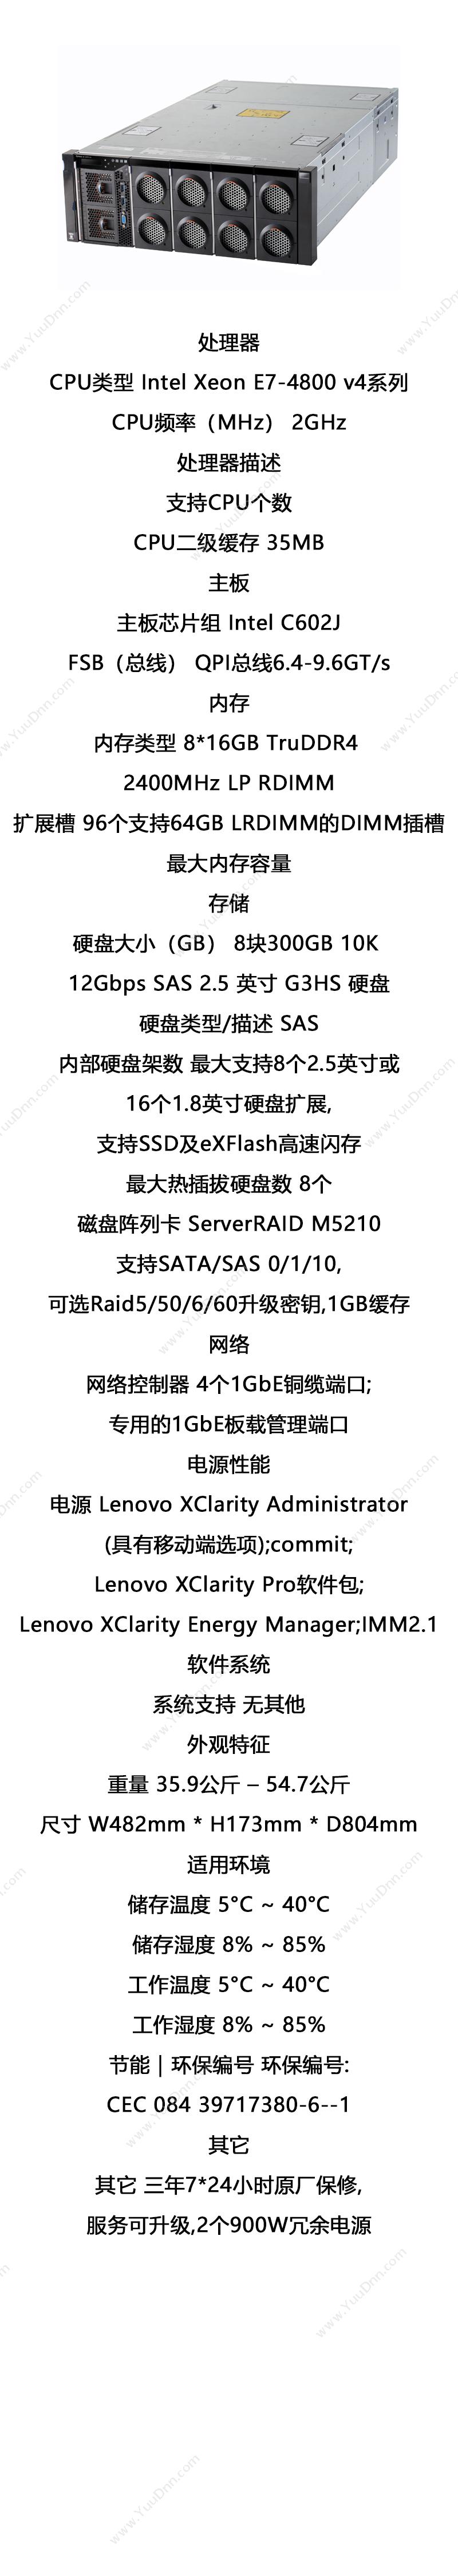 联想 Lenovo System X3850 X6（2*E7-4830 V4/128GB/8*300GB 10K 12Gbps SAS） 服务器 W482mm * H173mm * D804mm 塔式服务器